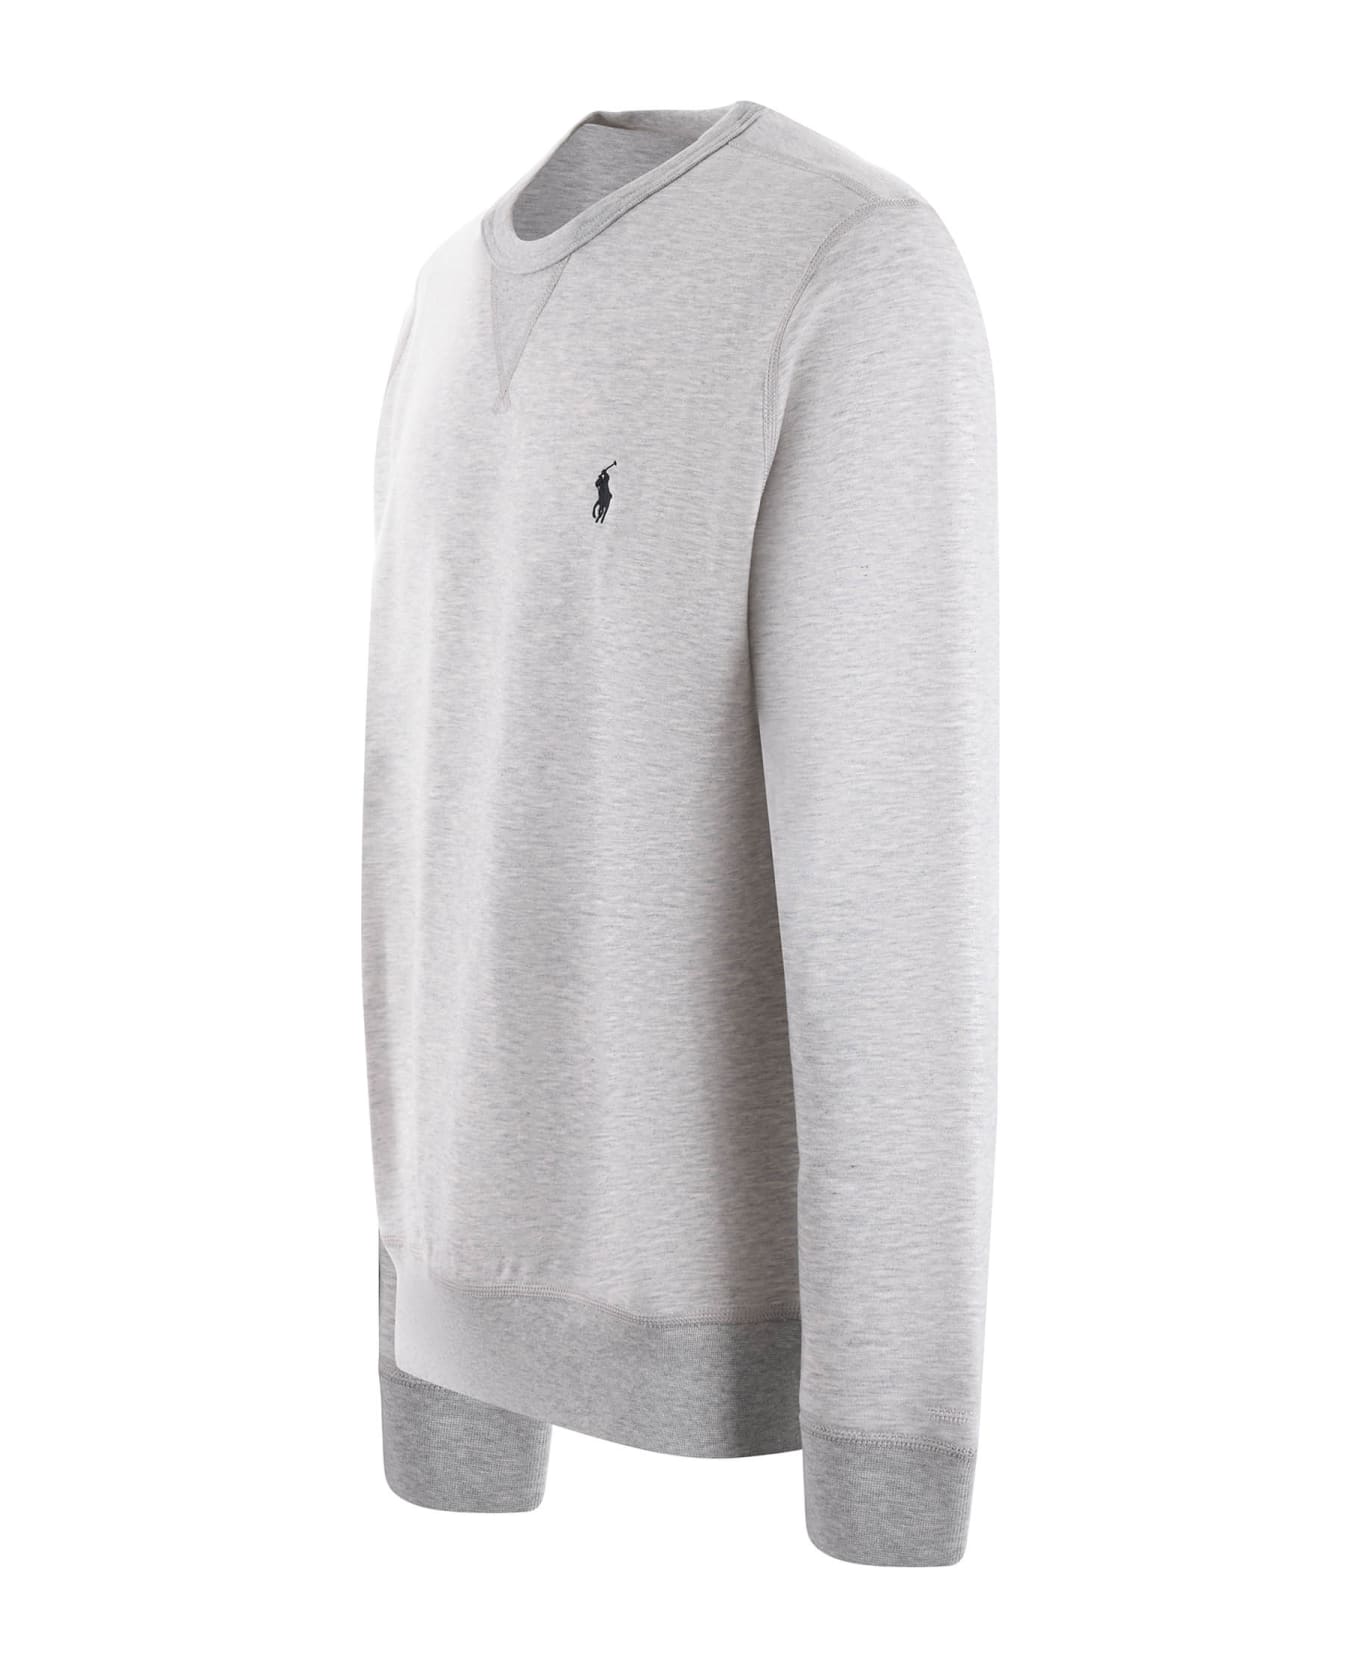 Polo Ralph Lauren Sweatshirt - Grigio melange